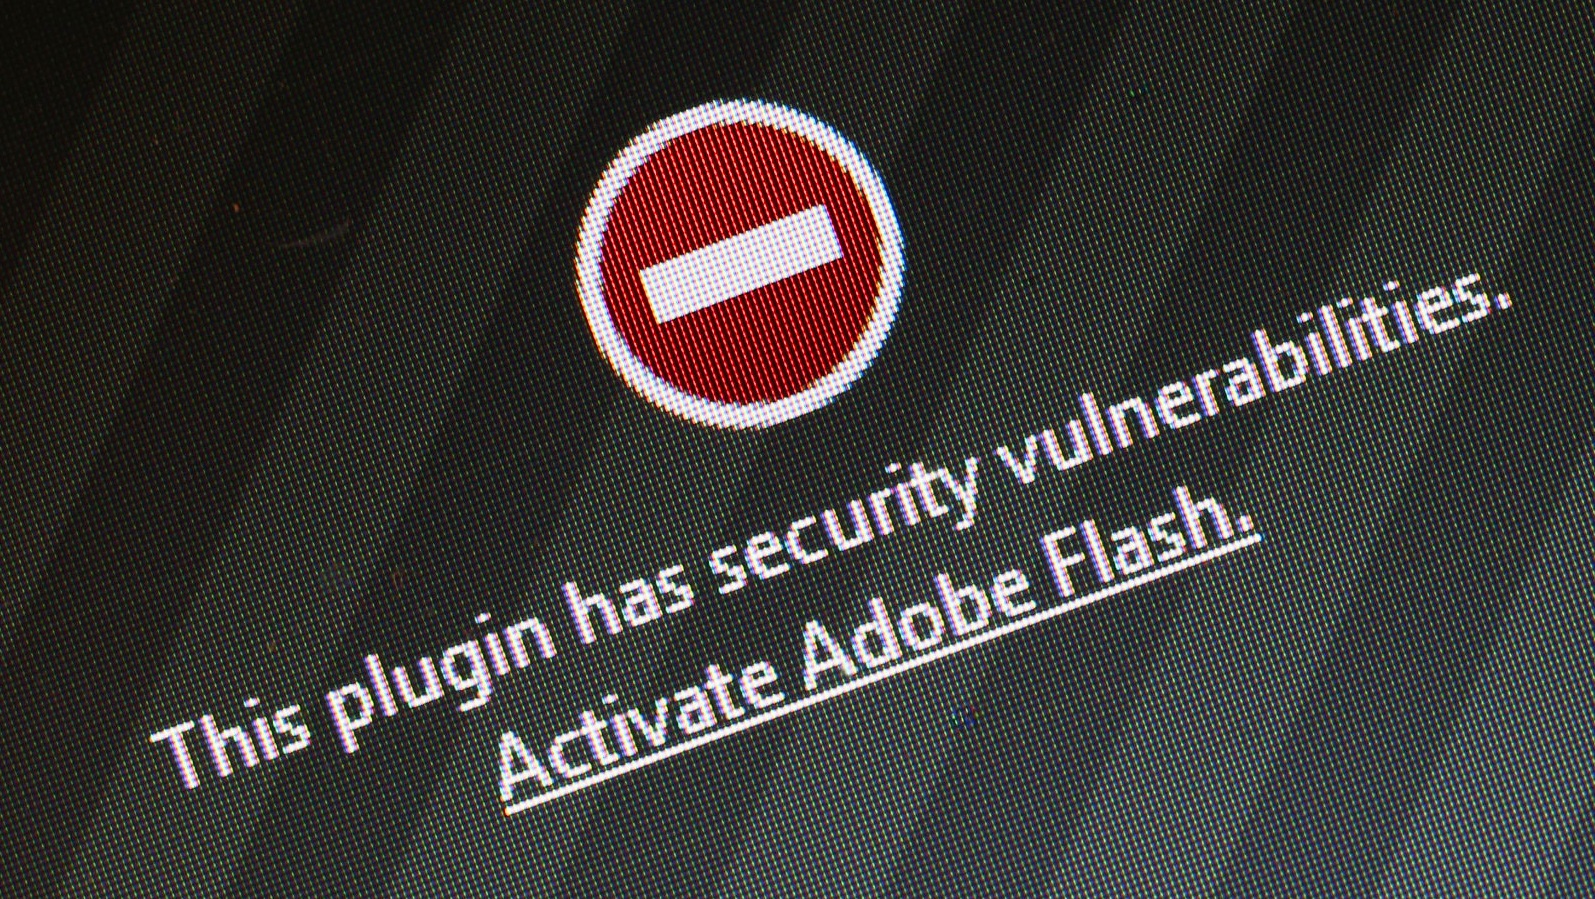 Νέα ευπάθεια στο Adobe Flash επέτρεψε σε hackers να εγκαταστήσουν malware σε υπολογιστές σε πολλές χώρες